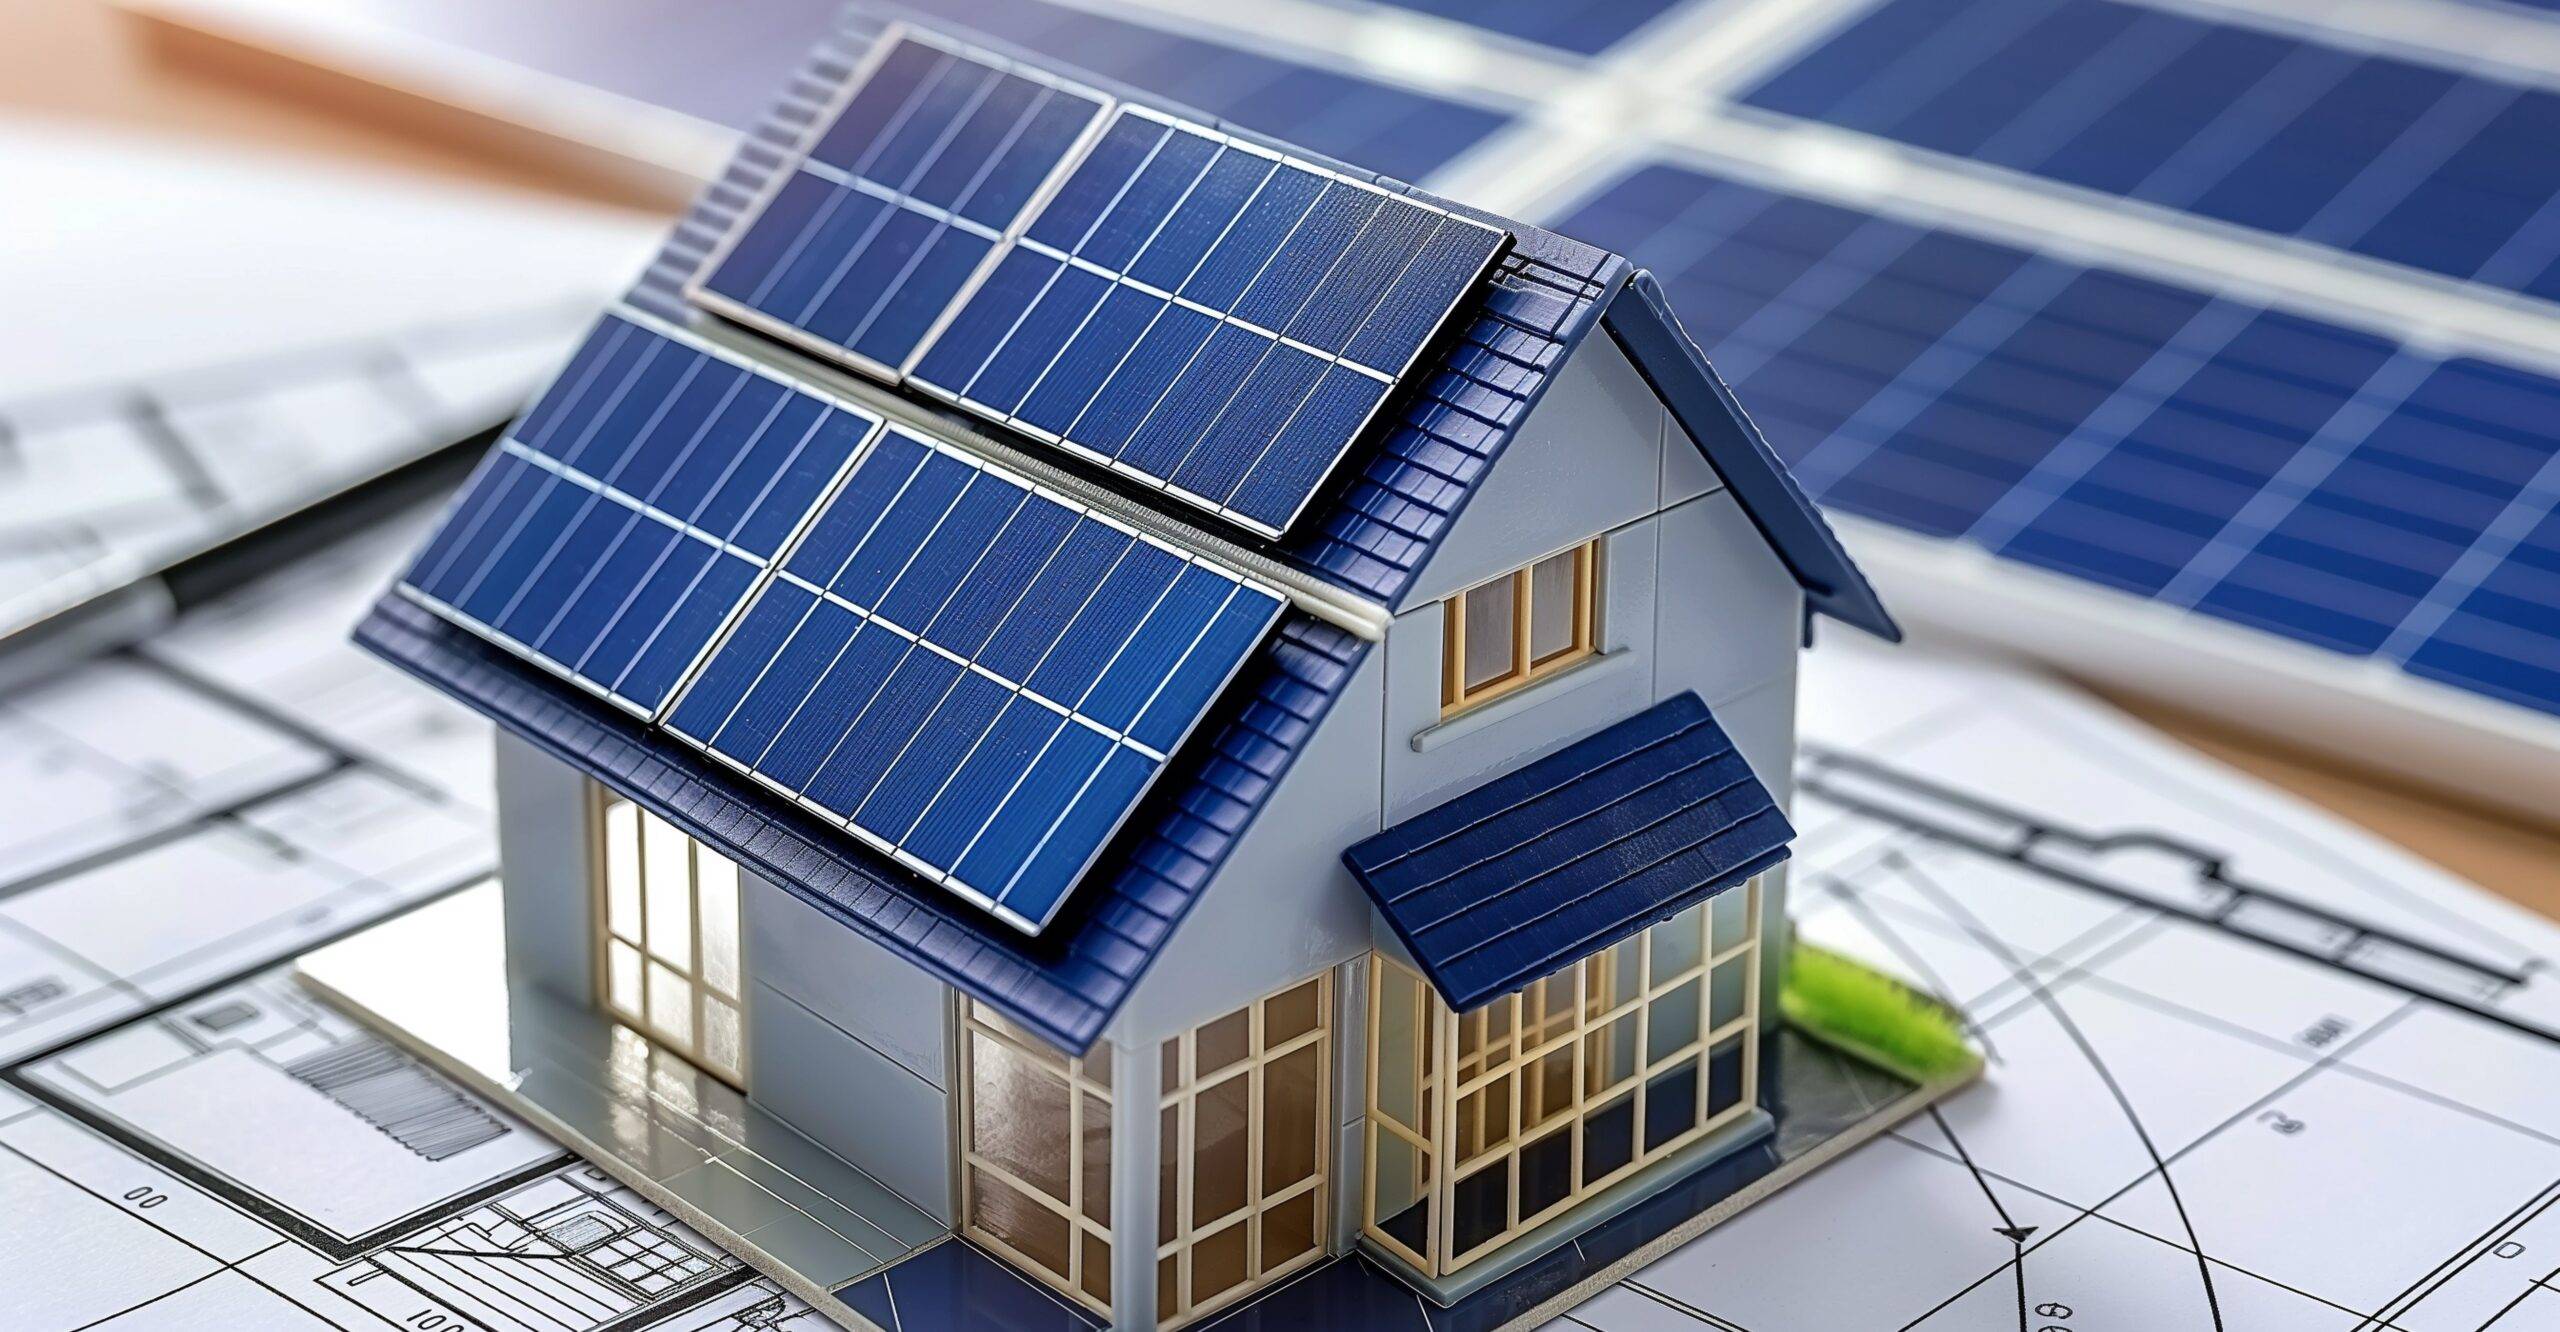 Modellhaus mit Sonnenkollektoren auf Blaupausen für nachhaltiges Leben